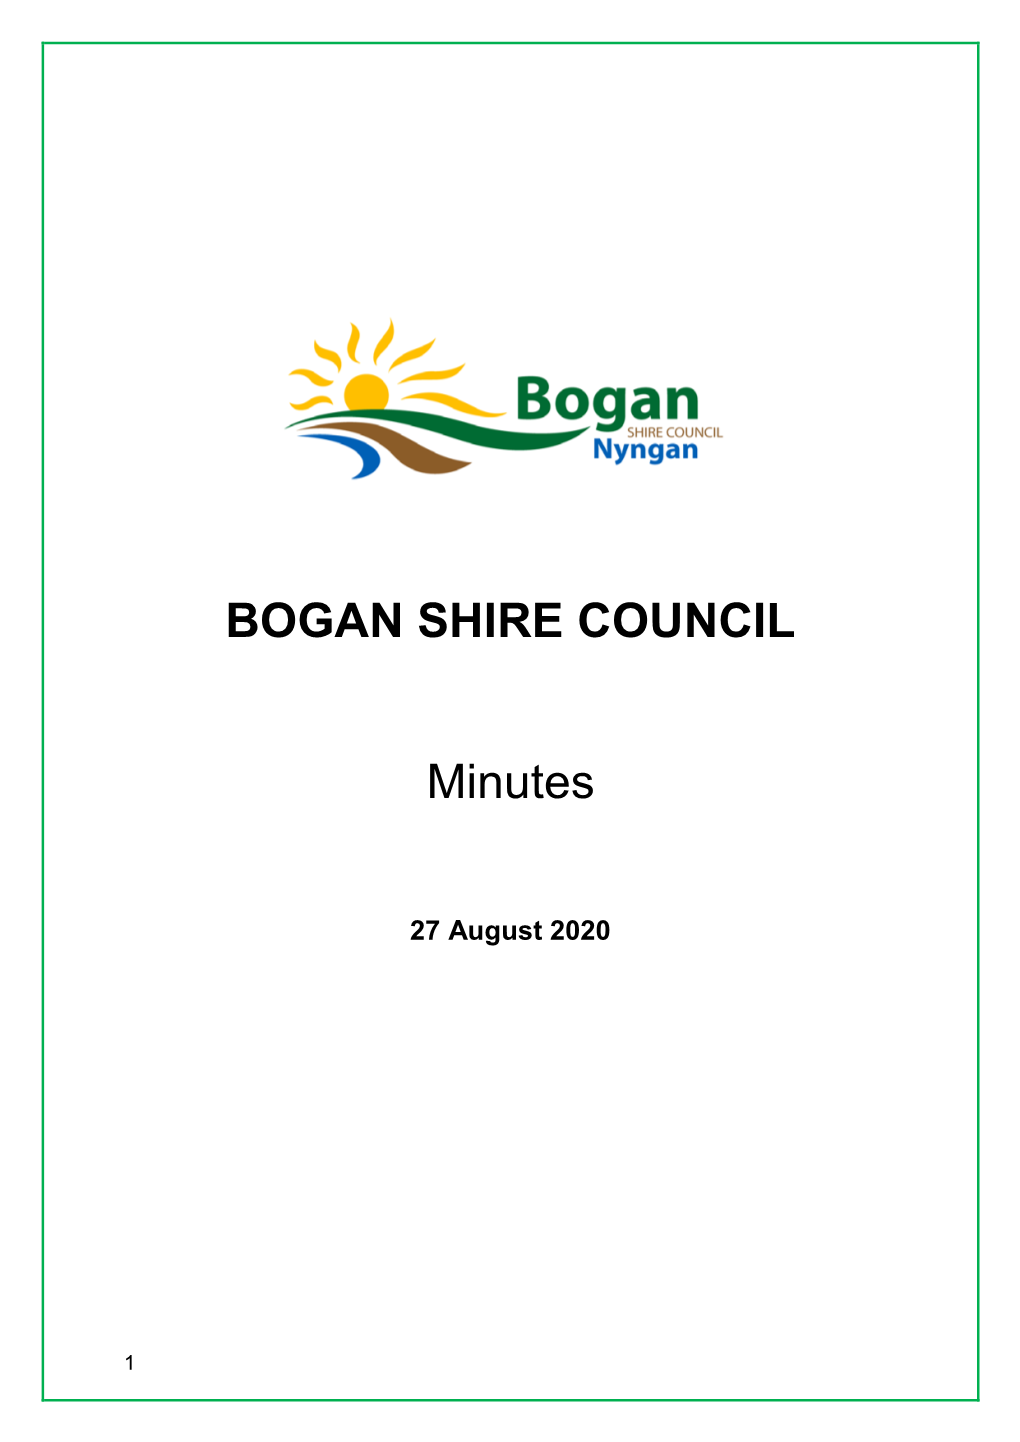 BOGAN SHIRE COUNCIL Minutes